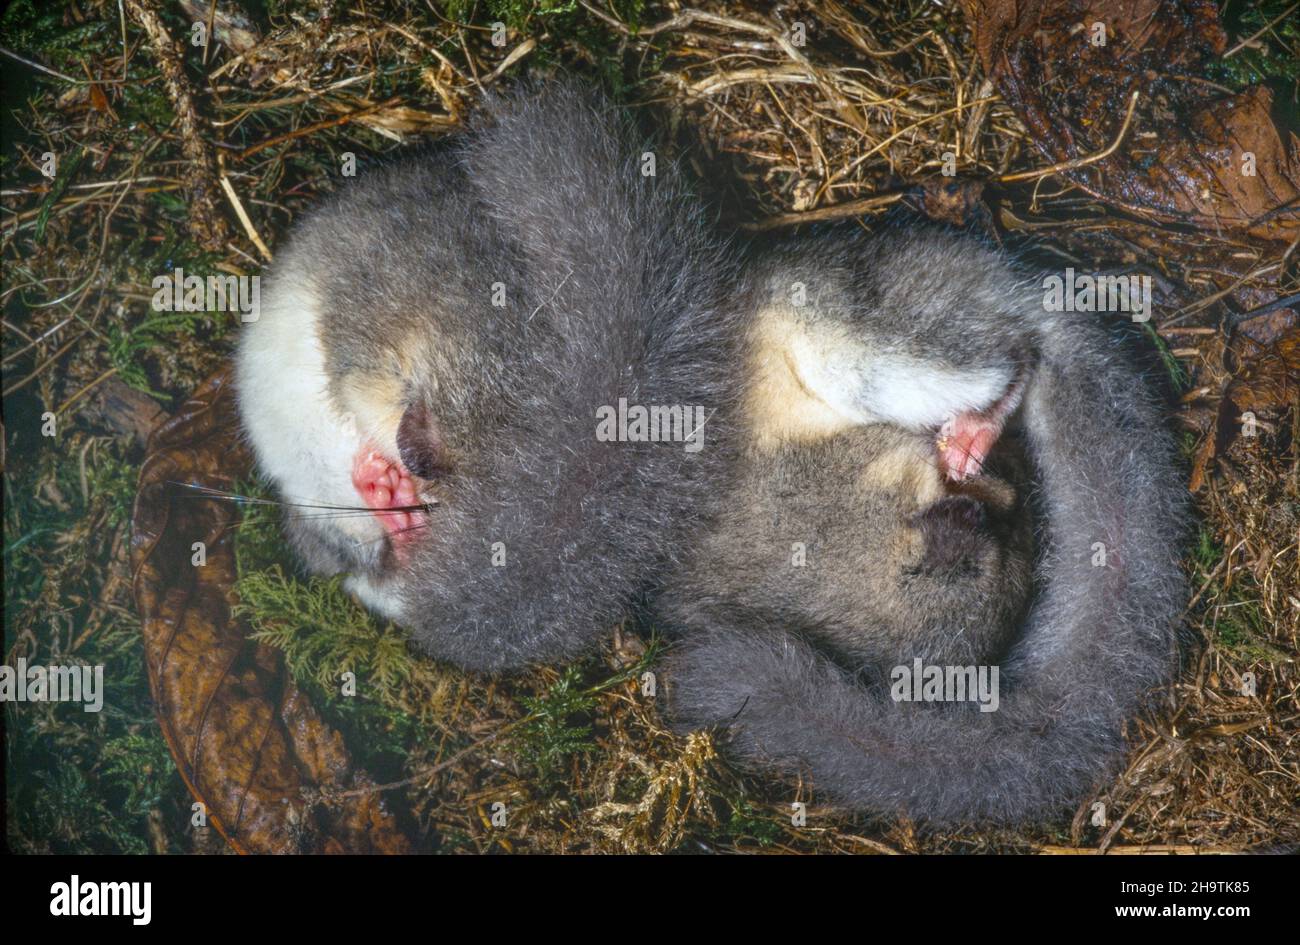 Essbare Siebenschläfer, essbare Siebenschläfer, fette Siebenschläfer, Eichhörnchen-Schwanz-Siebenschläfer (Glis glis), zwei essbare Siebenschläfer im Winterschlaf, Deutschland Stockfoto